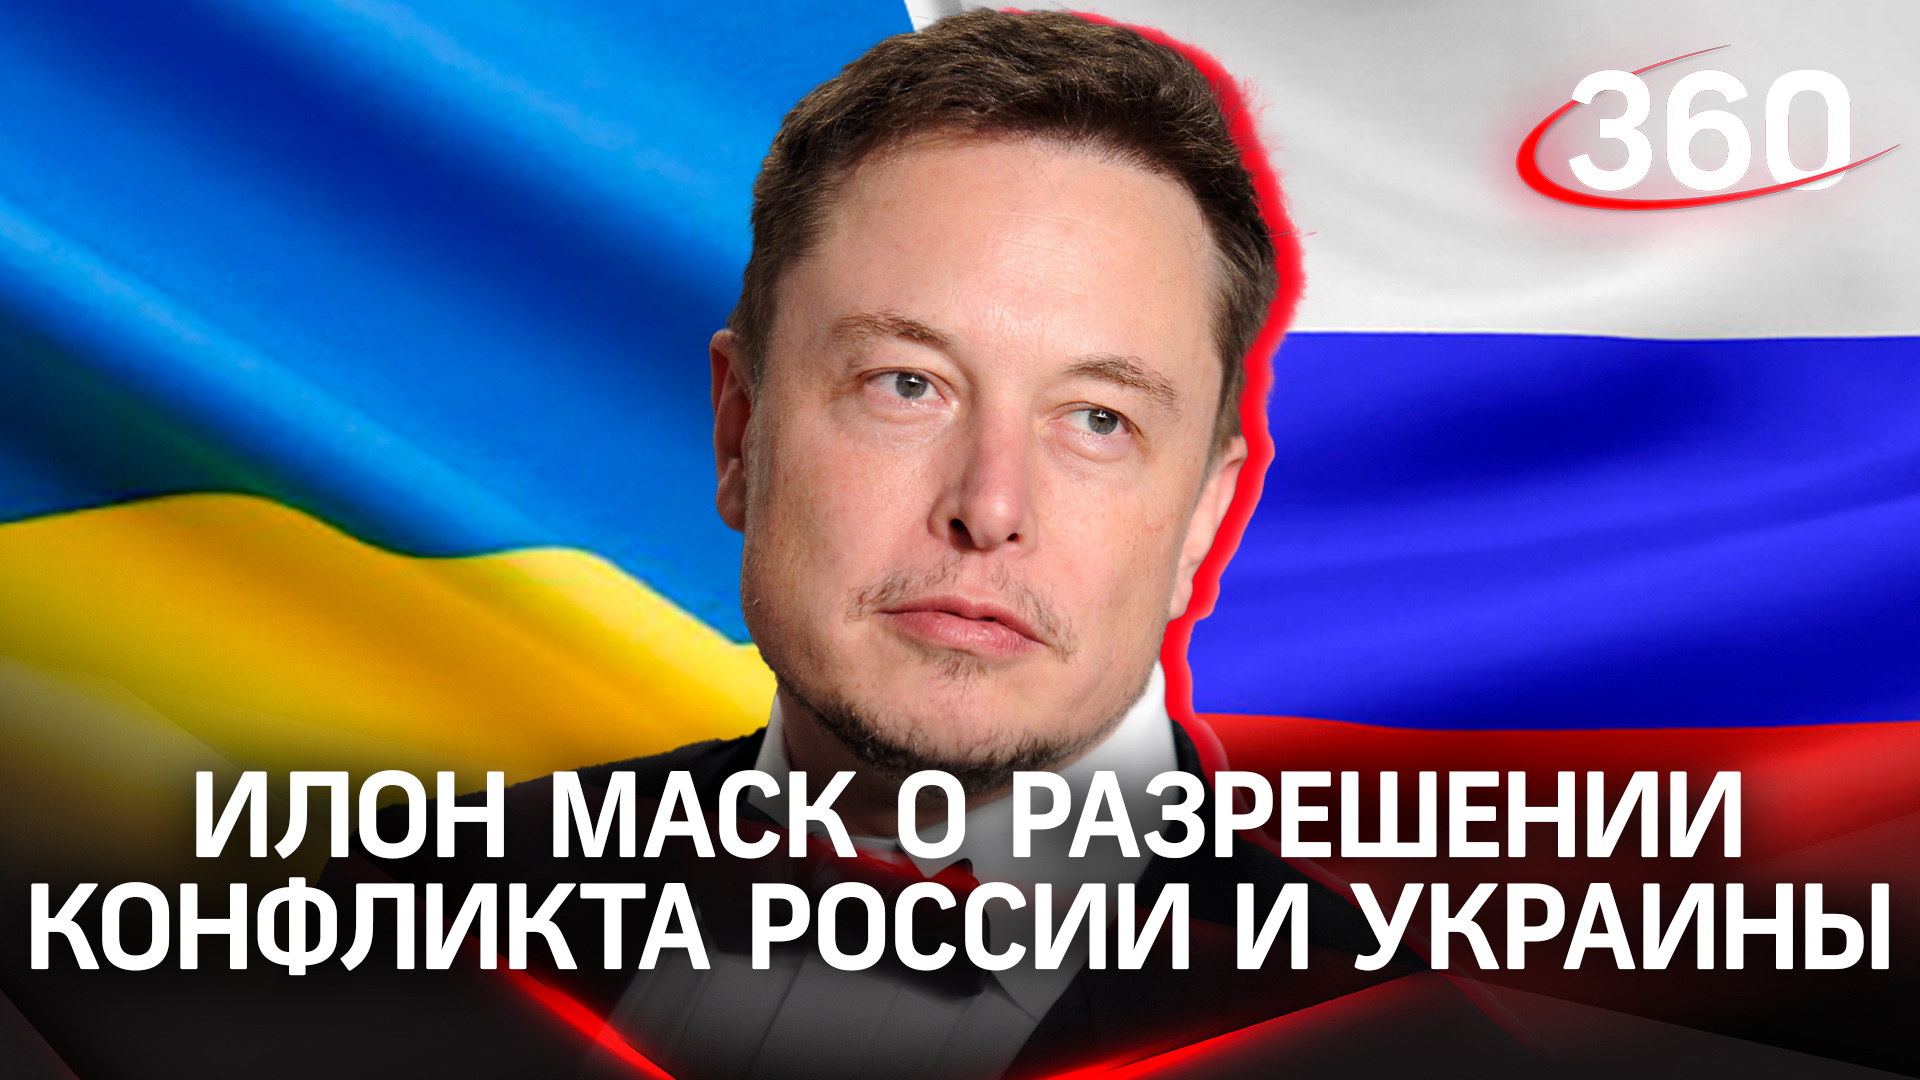 Крым - российский, рефендумы - повторить: Маск высказался о решении конфликта для Москвы и Киева